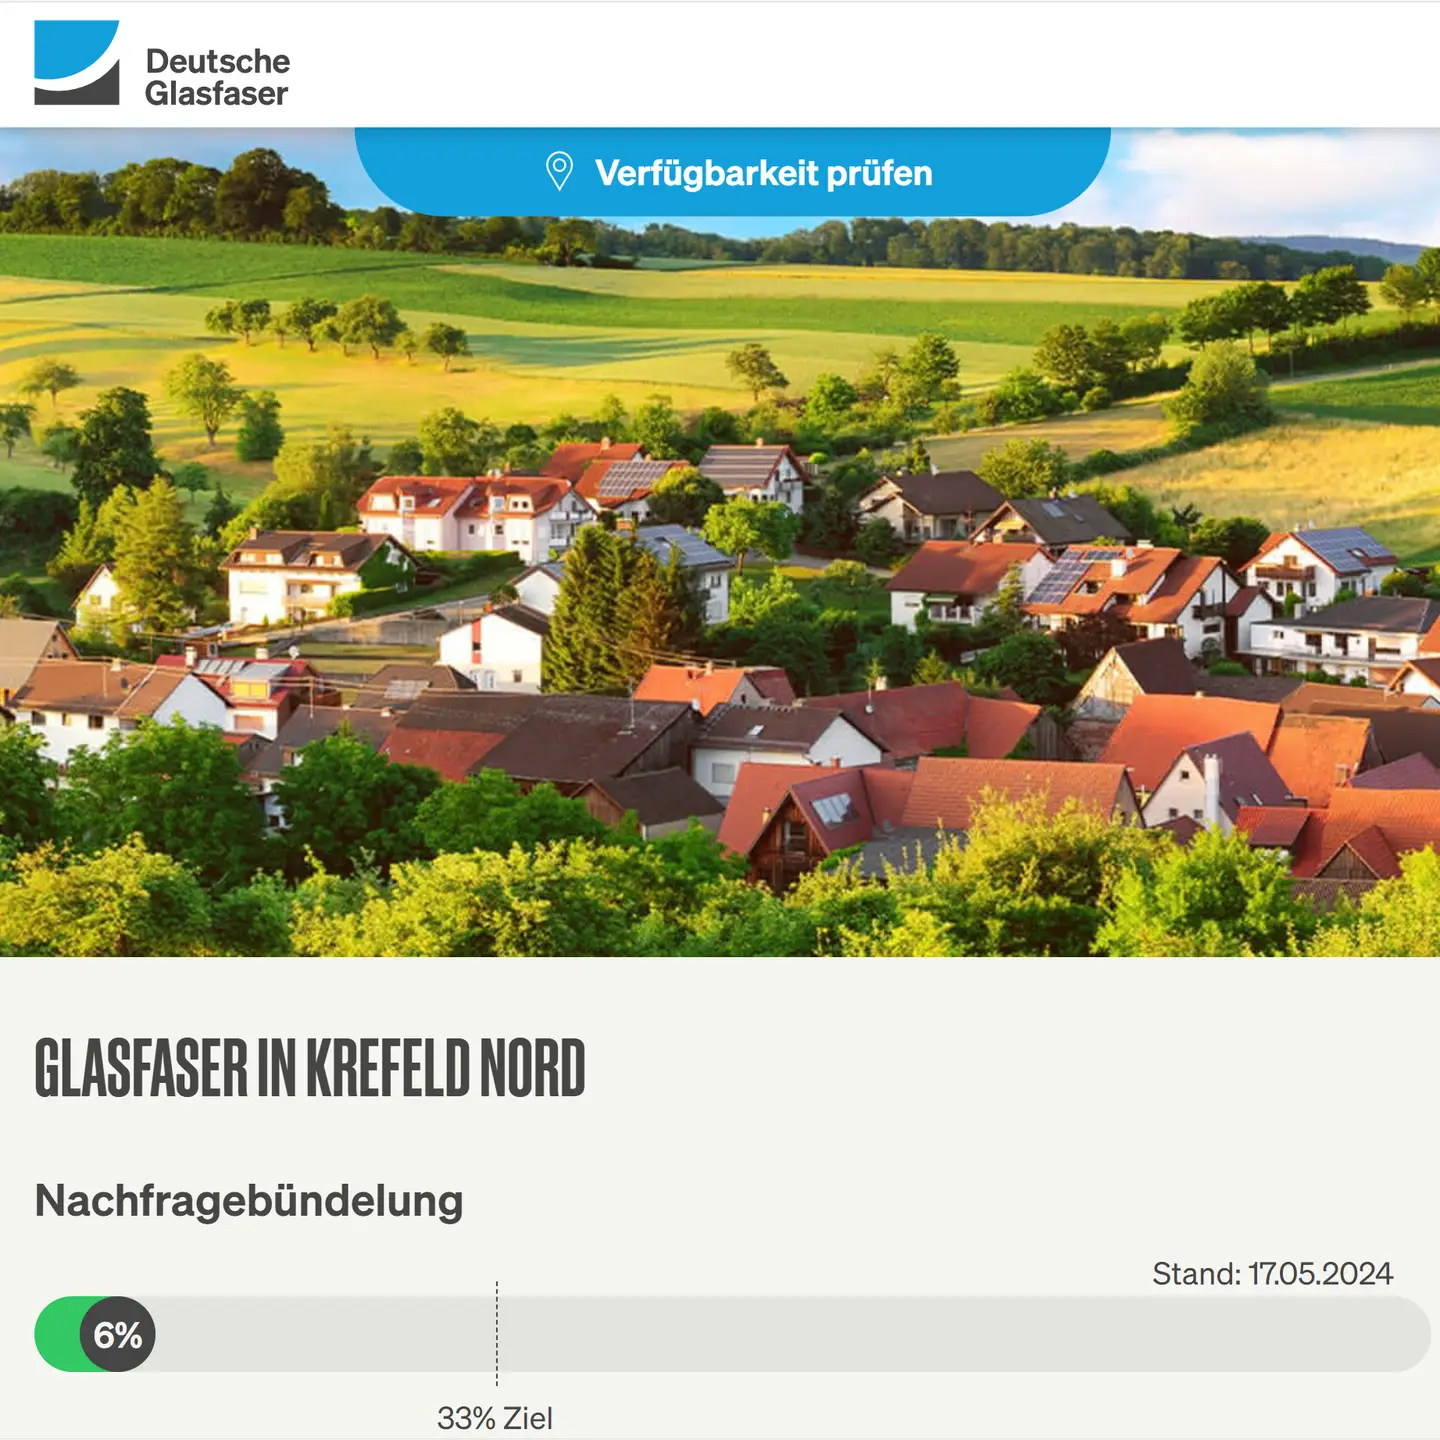 Screenshot von "Deutsche Glasfaser", oben DG Logo, ein Landschaftsbild, Schriftzüge "Glasfaser in Krefeld-Nord", Nachfragebündelung bis 27.7.2024, Anzeige des aktuellen Stand: 6%